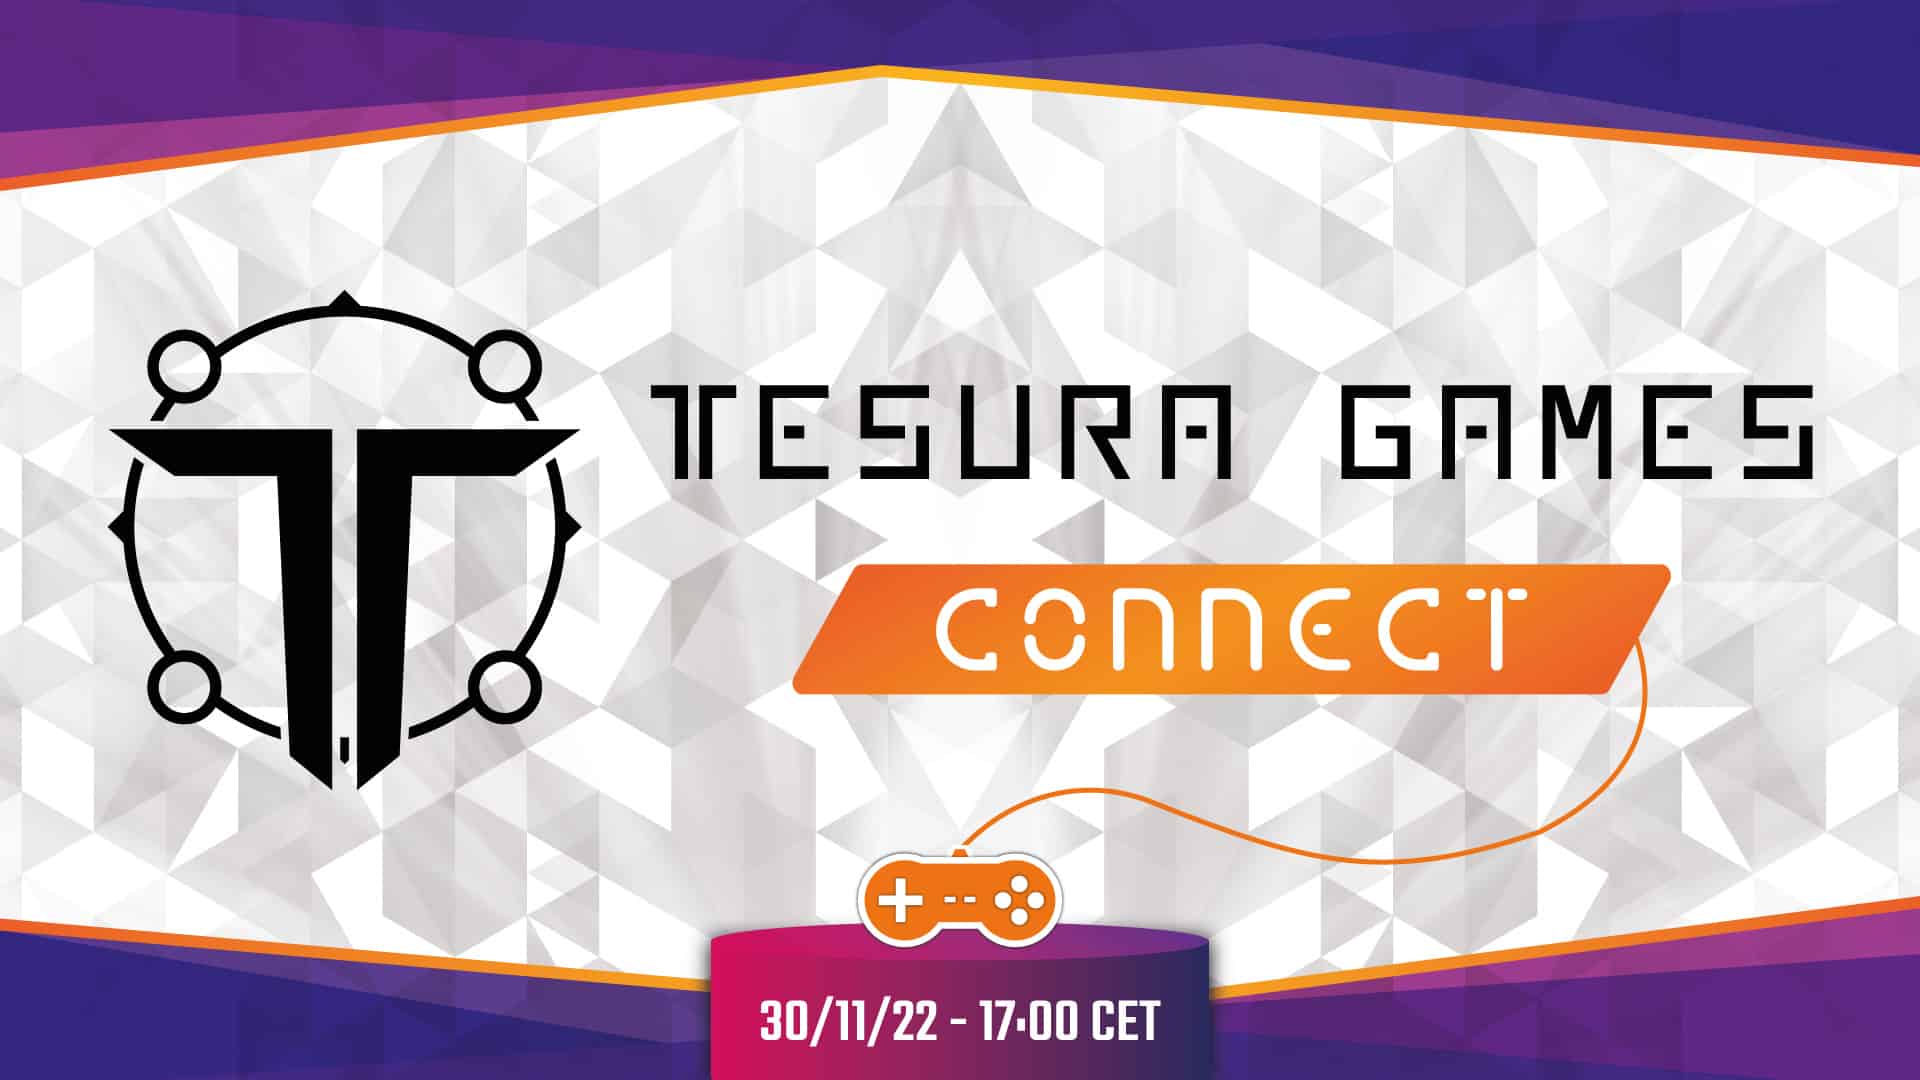 Tesura Games desvela una presentación especial con anuncios para este miércoles